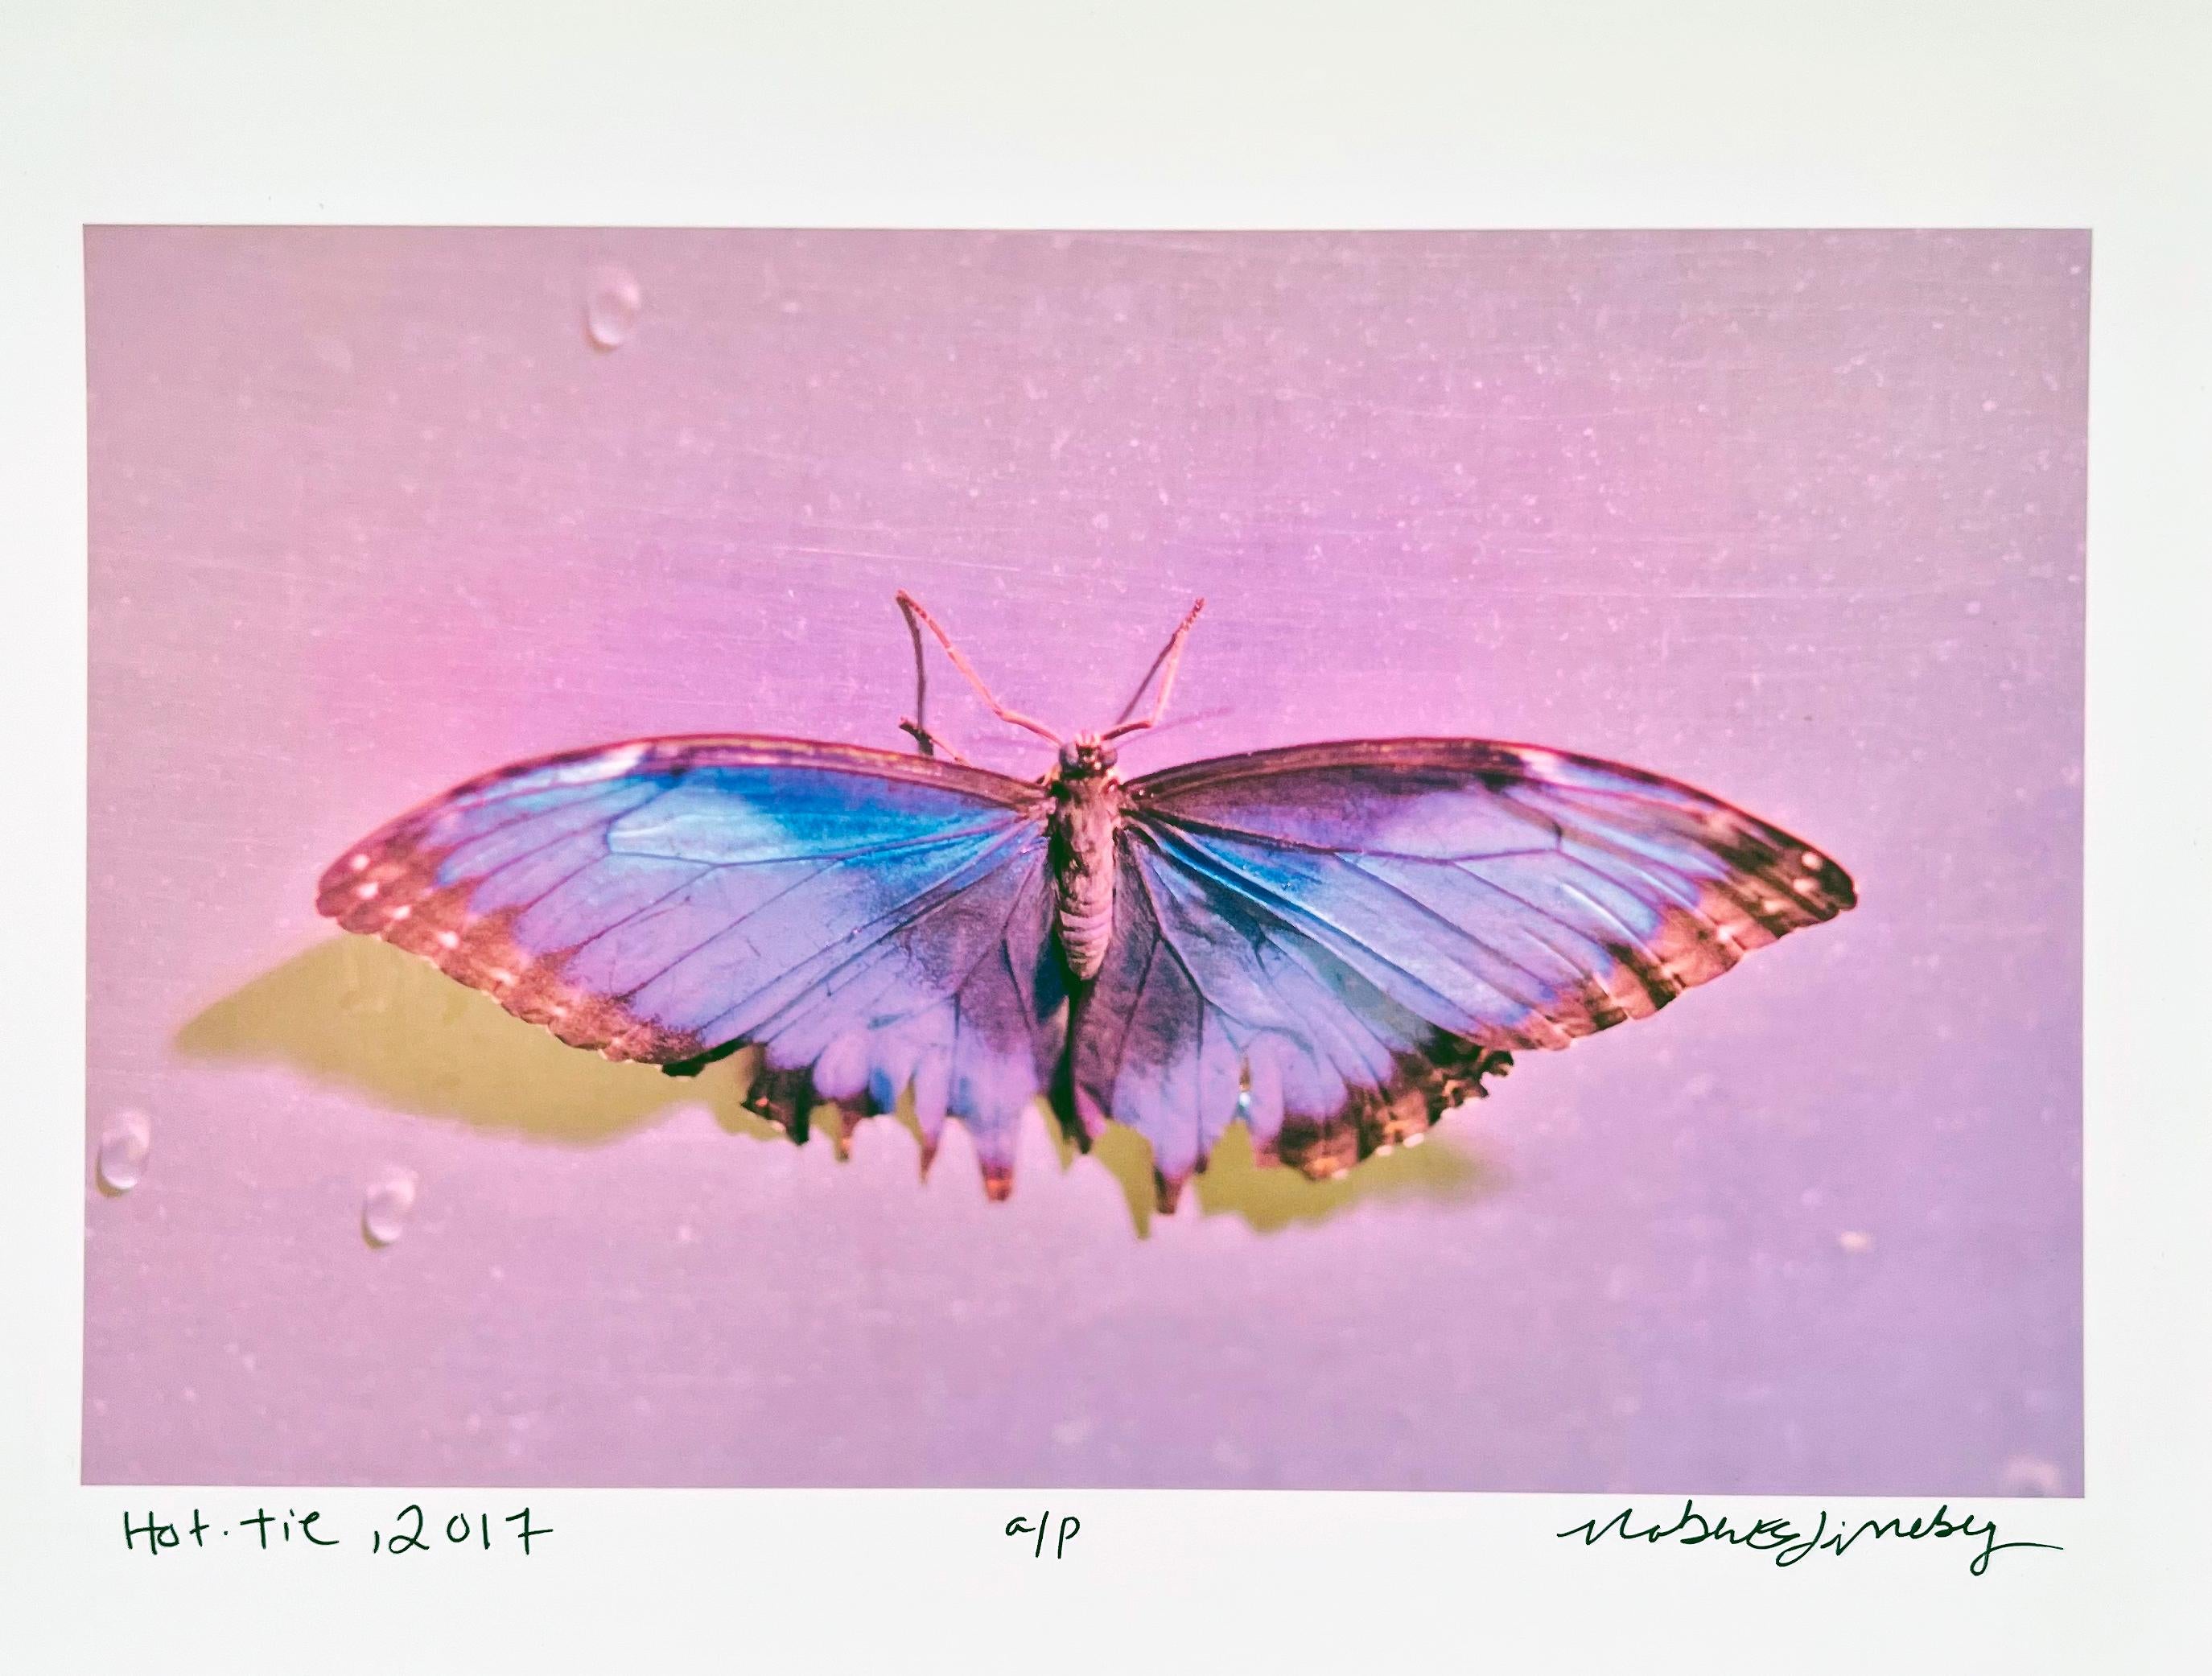 Von der Verwandlung bis zur Vergänglichkeit - die Geburt und der Tod eines Schmetterlings werden in einer Fotoserie von Roberta Fineberg neu inszeniert, die von einem Gedicht des persischen Dichters Rumi aus dem 13. Jahrhundert inspiriert ist, der